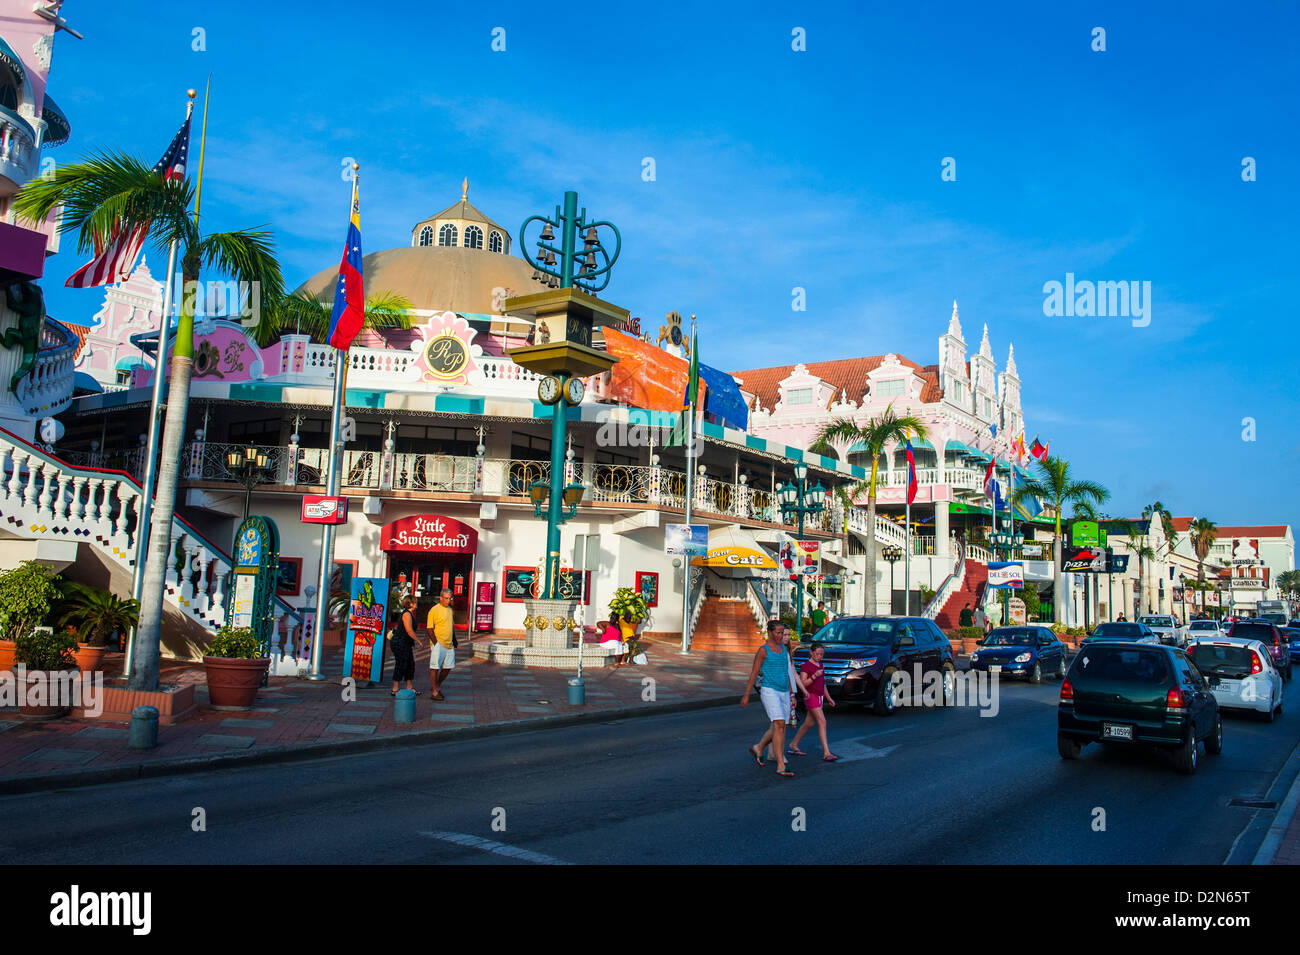 Centre-ville d'Oranjestad, la capitale d'Aruba, îles ABC, Netherlands Antilles, Caraïbes, Amérique Centrale Banque D'Images